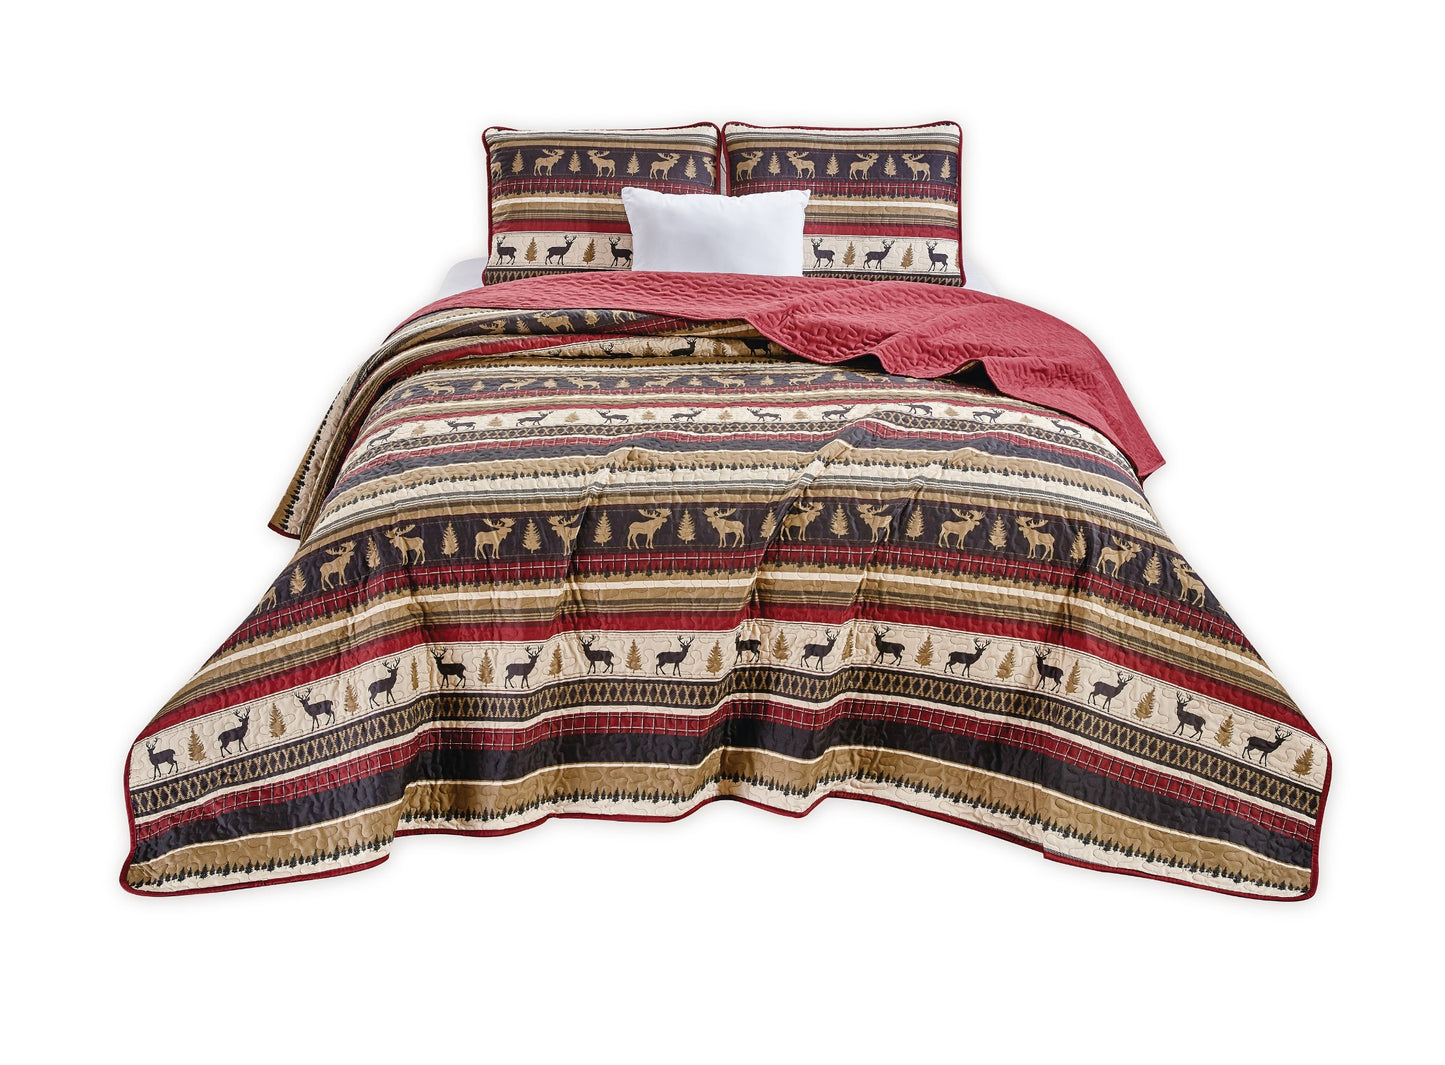 Lodge Style 3-Piece Microfiber Bedspread Set